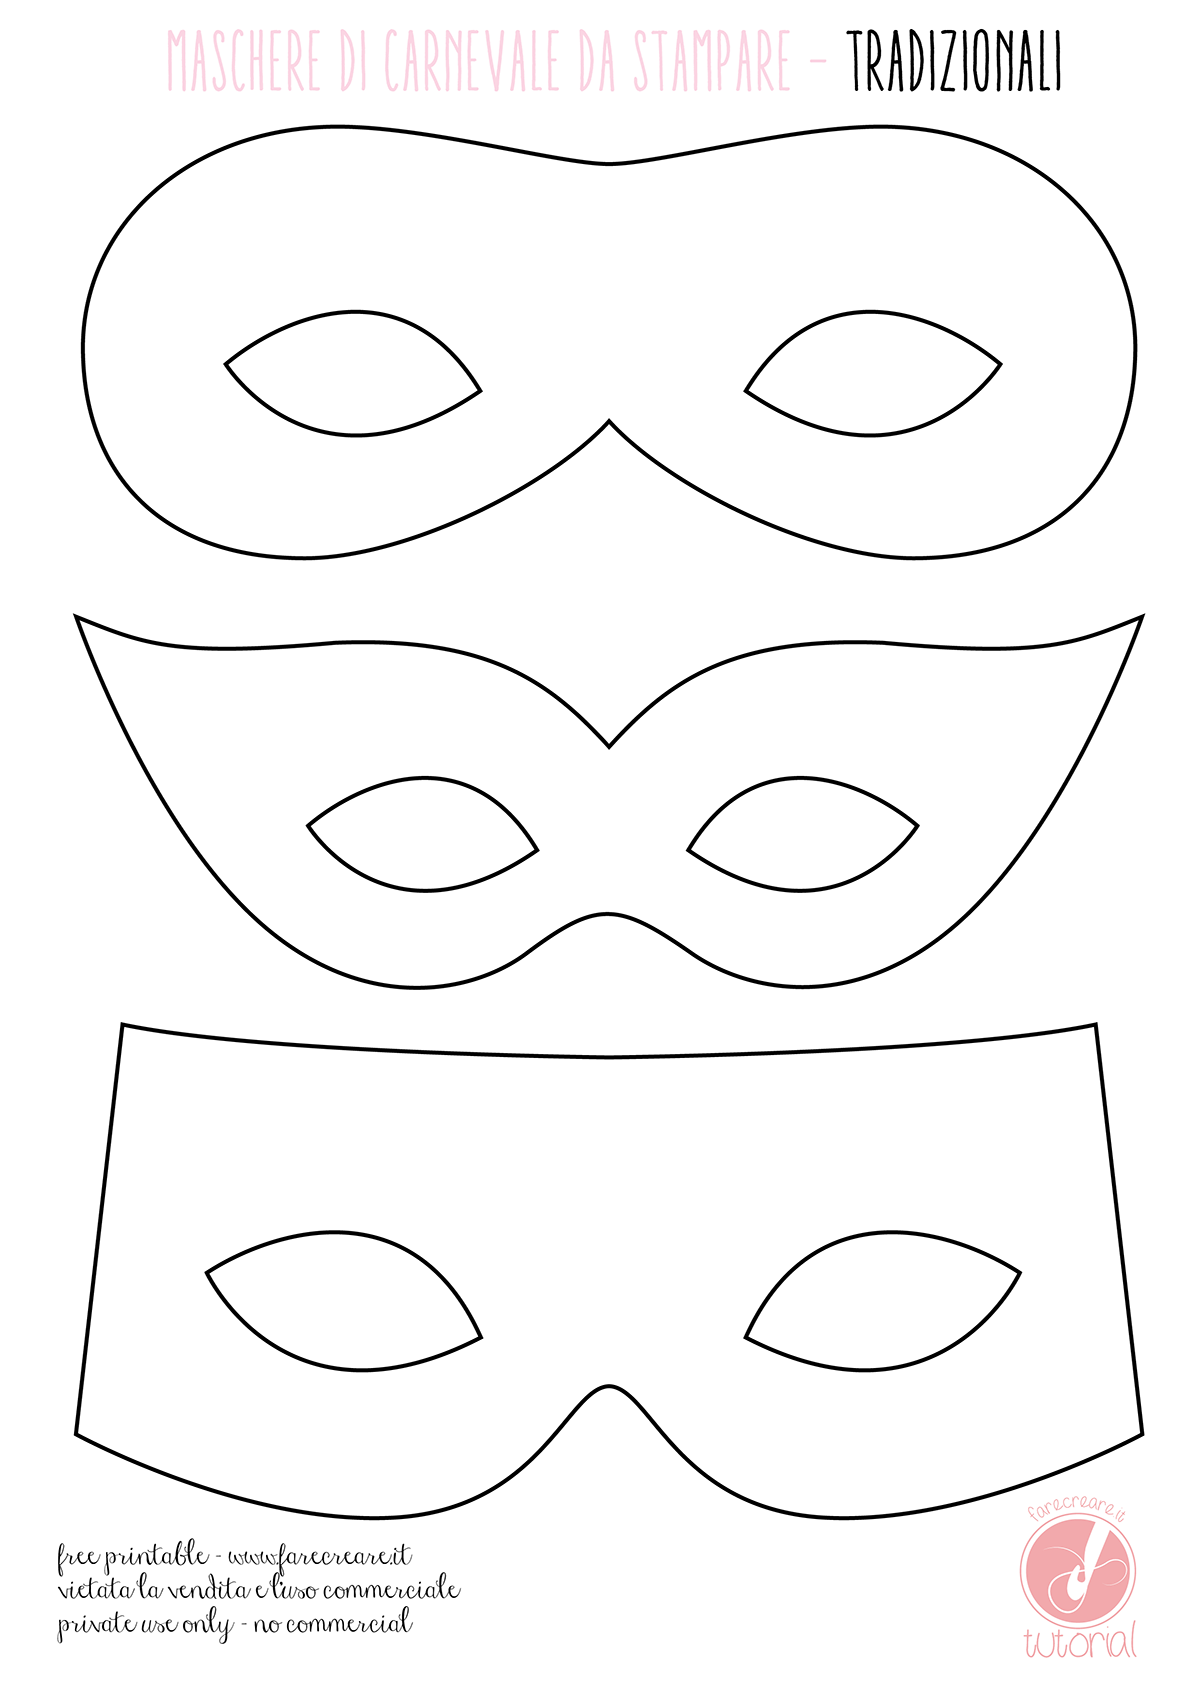 Maschere di carnevale semplici con carta e fantasia for Maschere di carnevale tradizionali da colorare per bambini da stampare